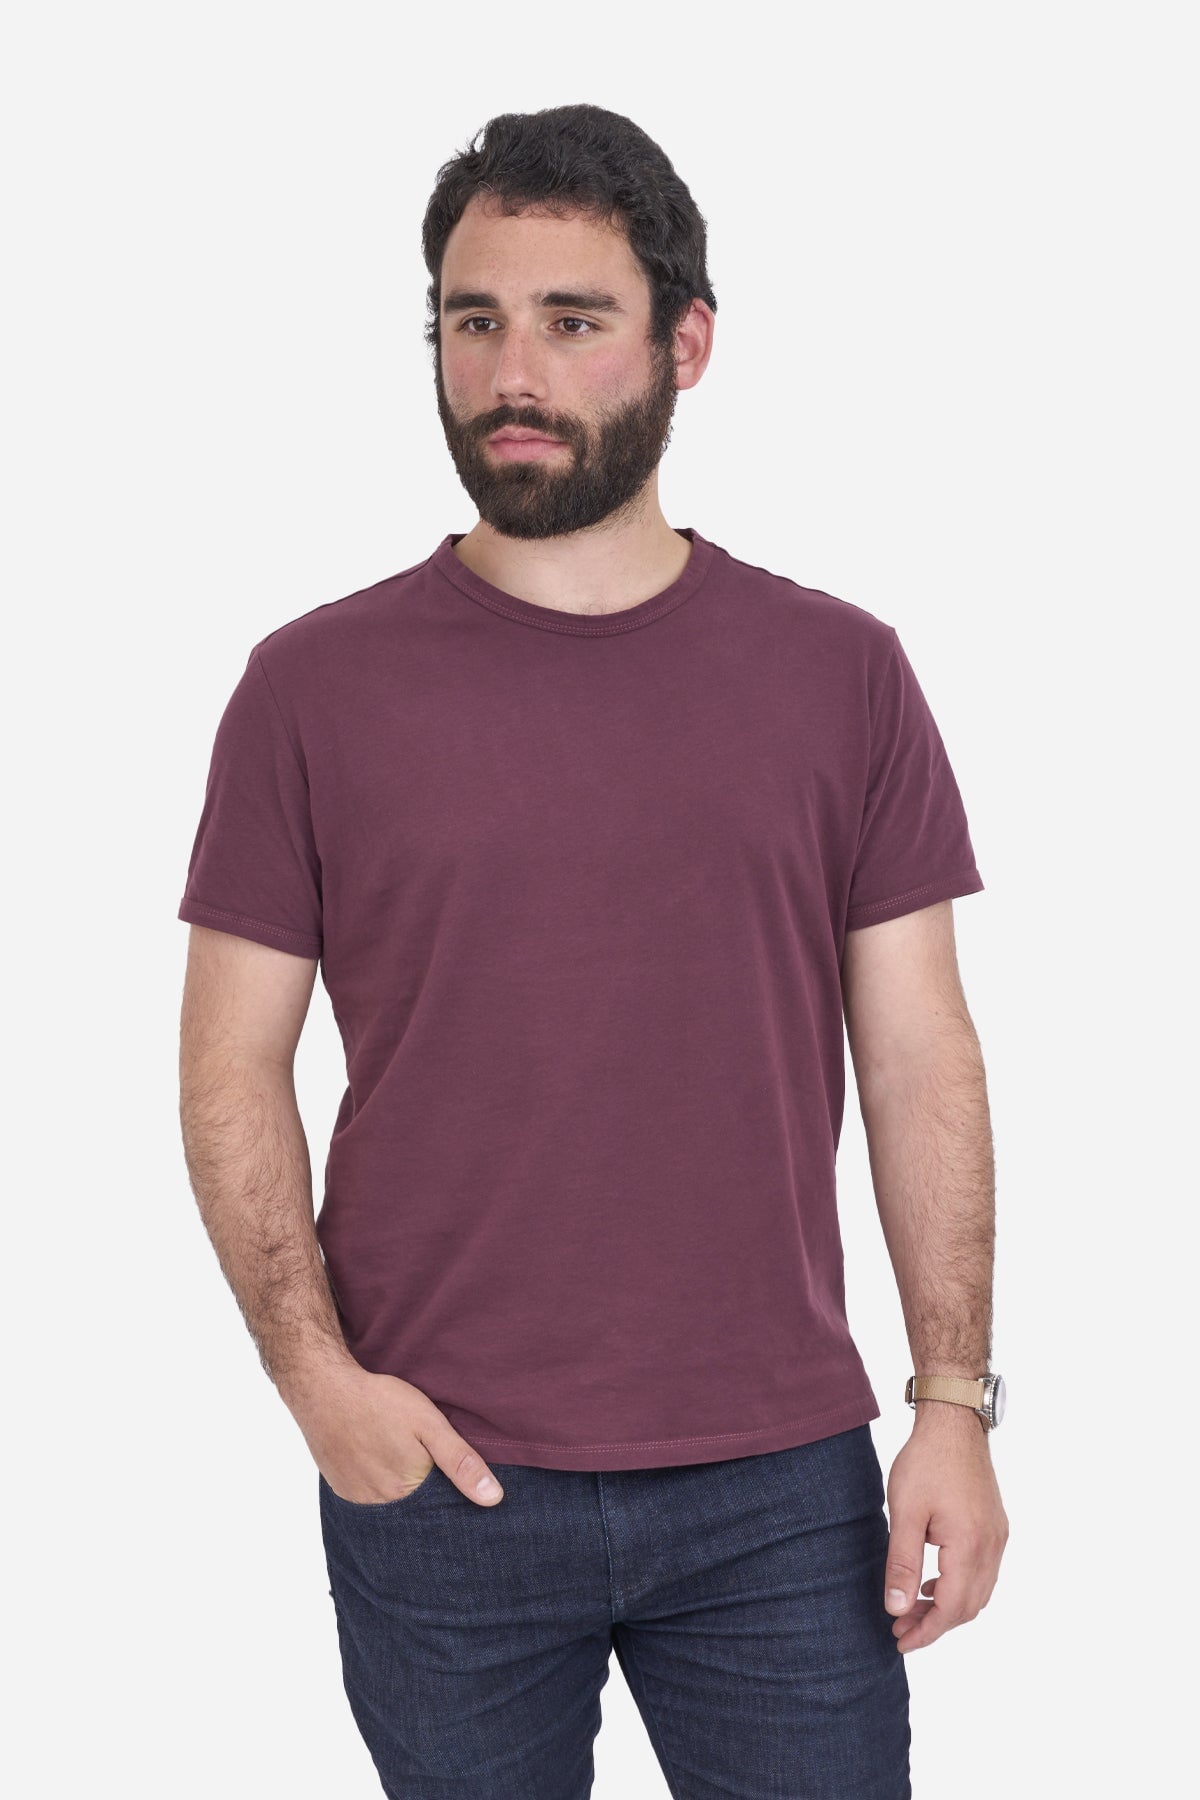 Soft T-Shirt Burgundy